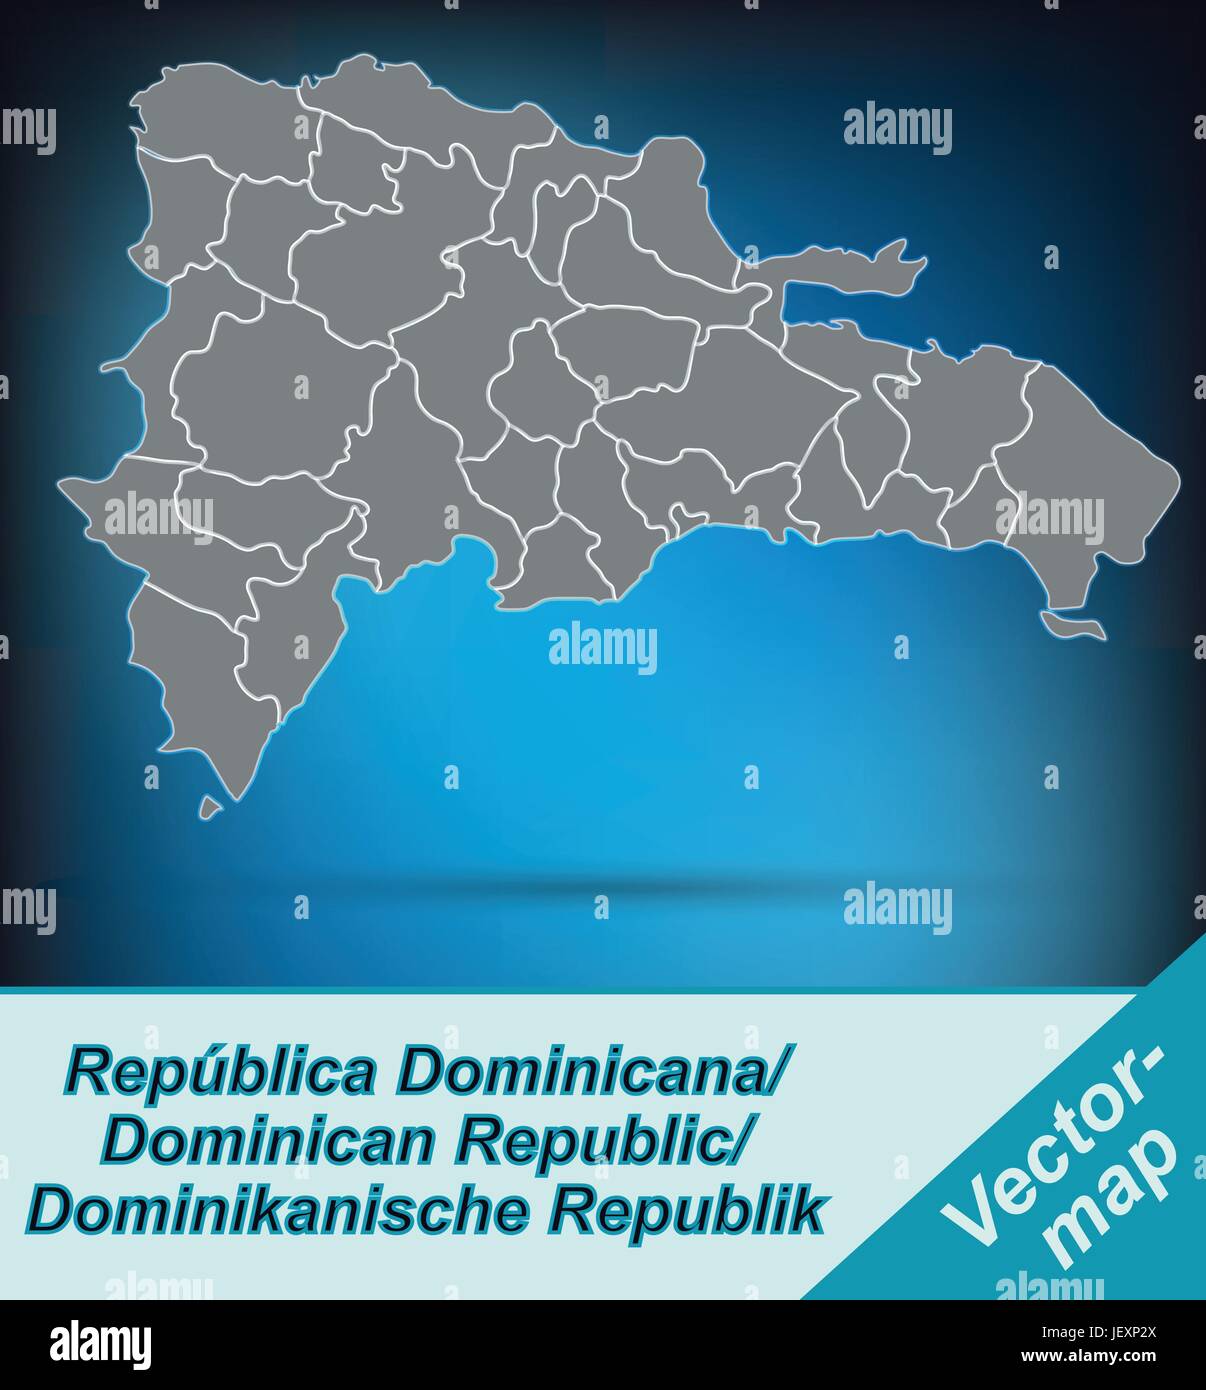 Mapa de la frontera de República Dominicana con bordes en gris brillante Ilustración del Vector